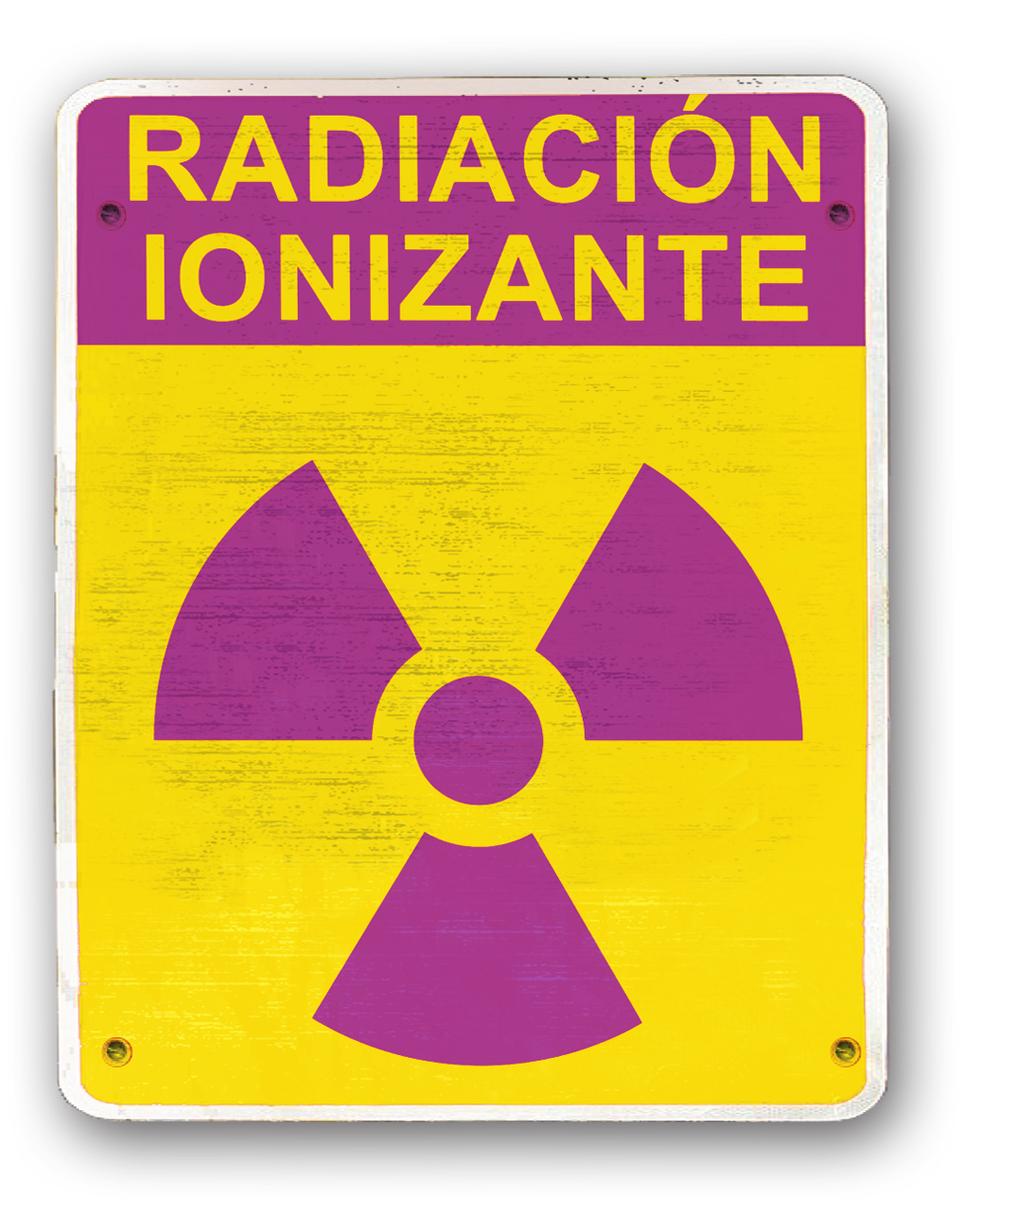 Precauciones Los equipos que contienen fuentes de radiación, deben ser señalizados mediante un símbolo internacional de advertencia.